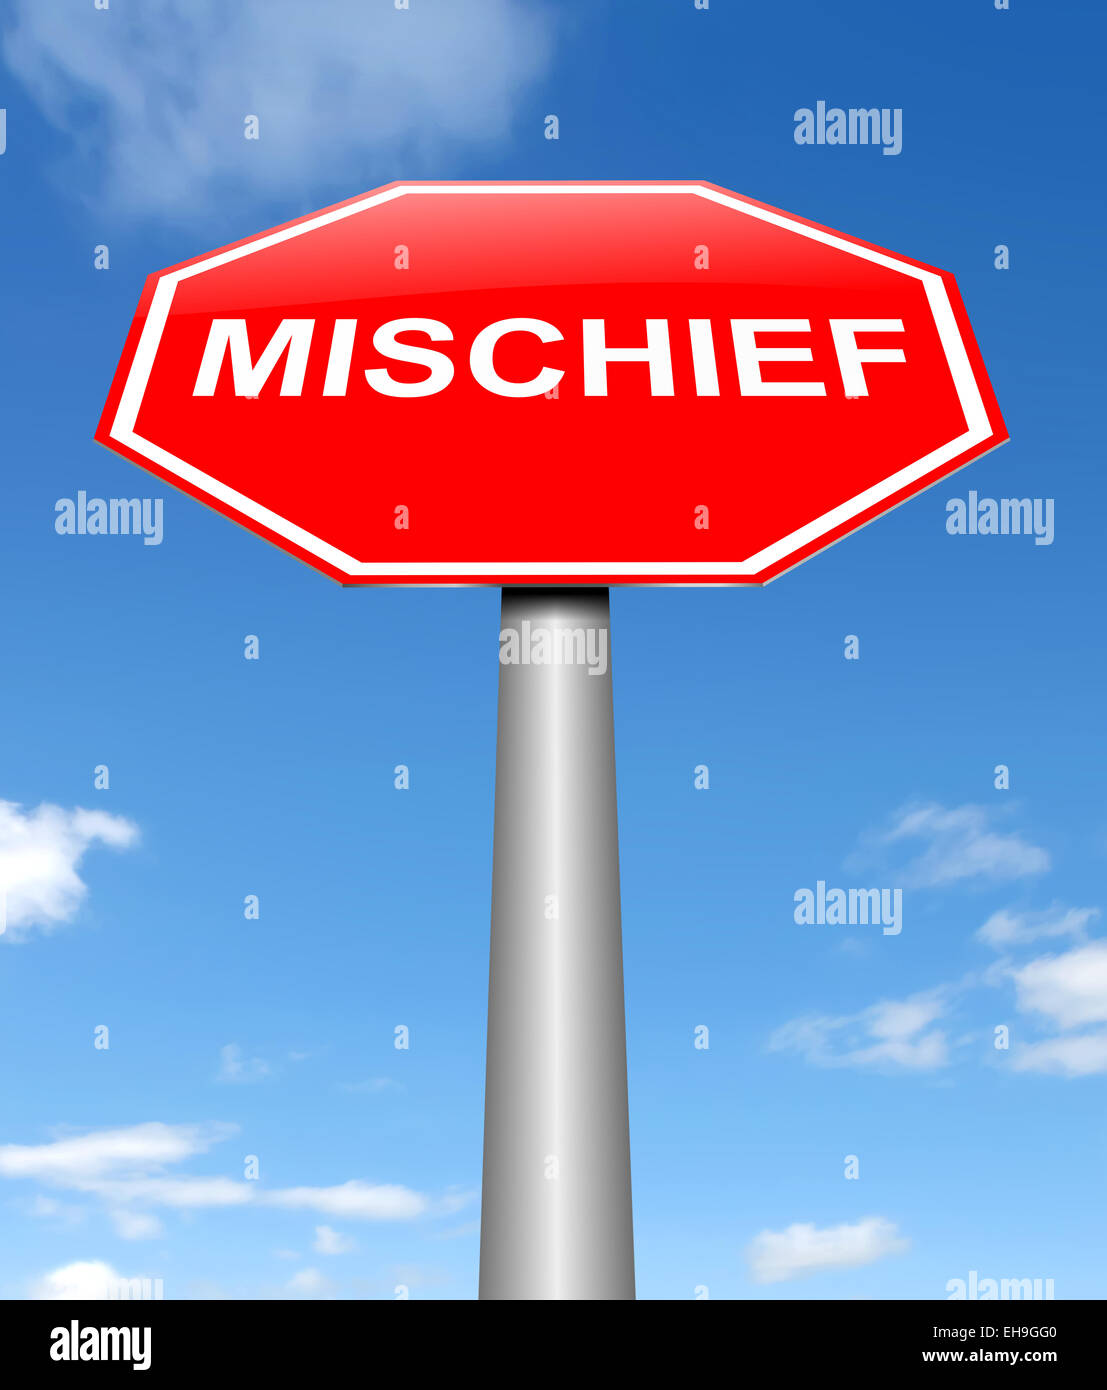 Mischief concept. Stock Photo